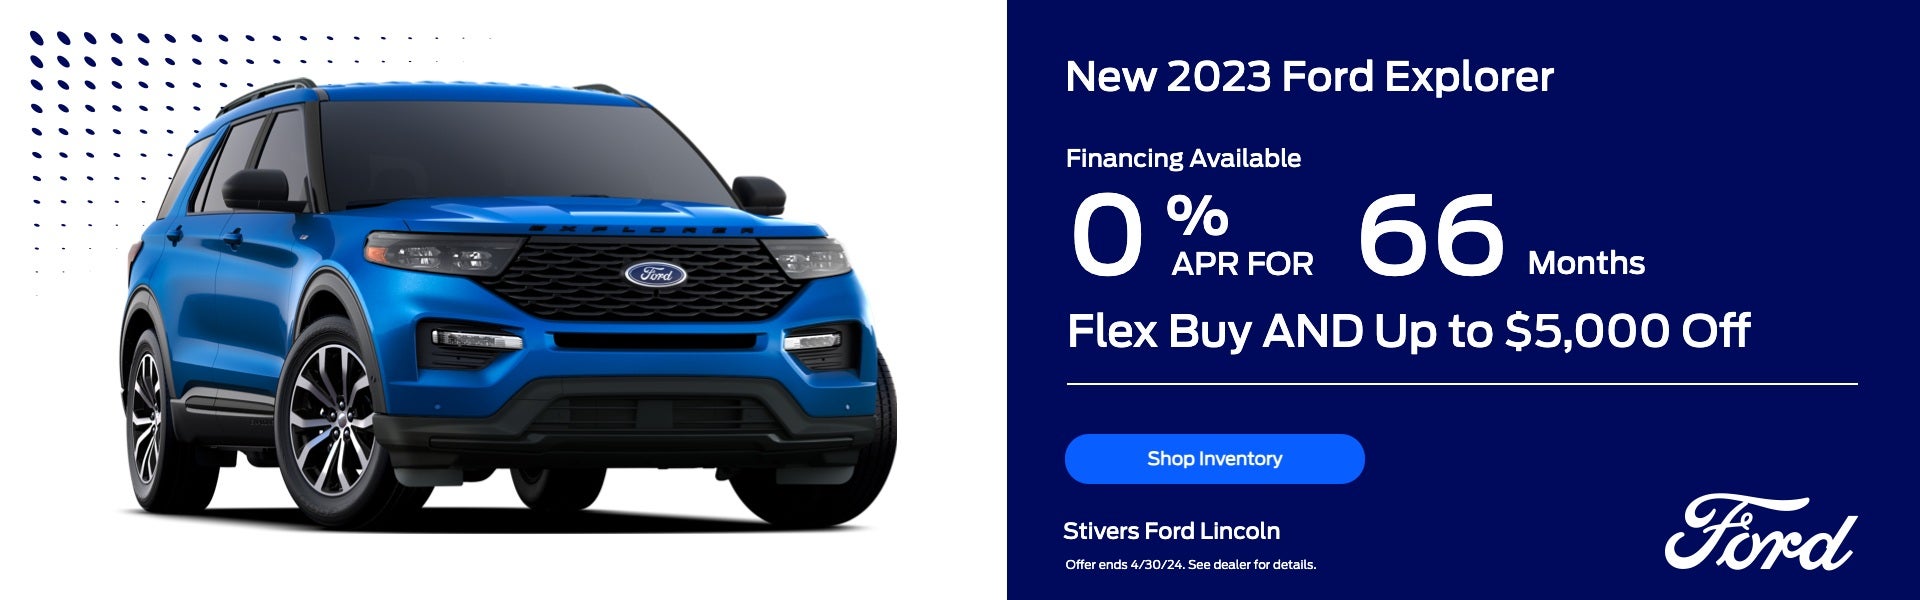 2023 Ford Explorer Offer